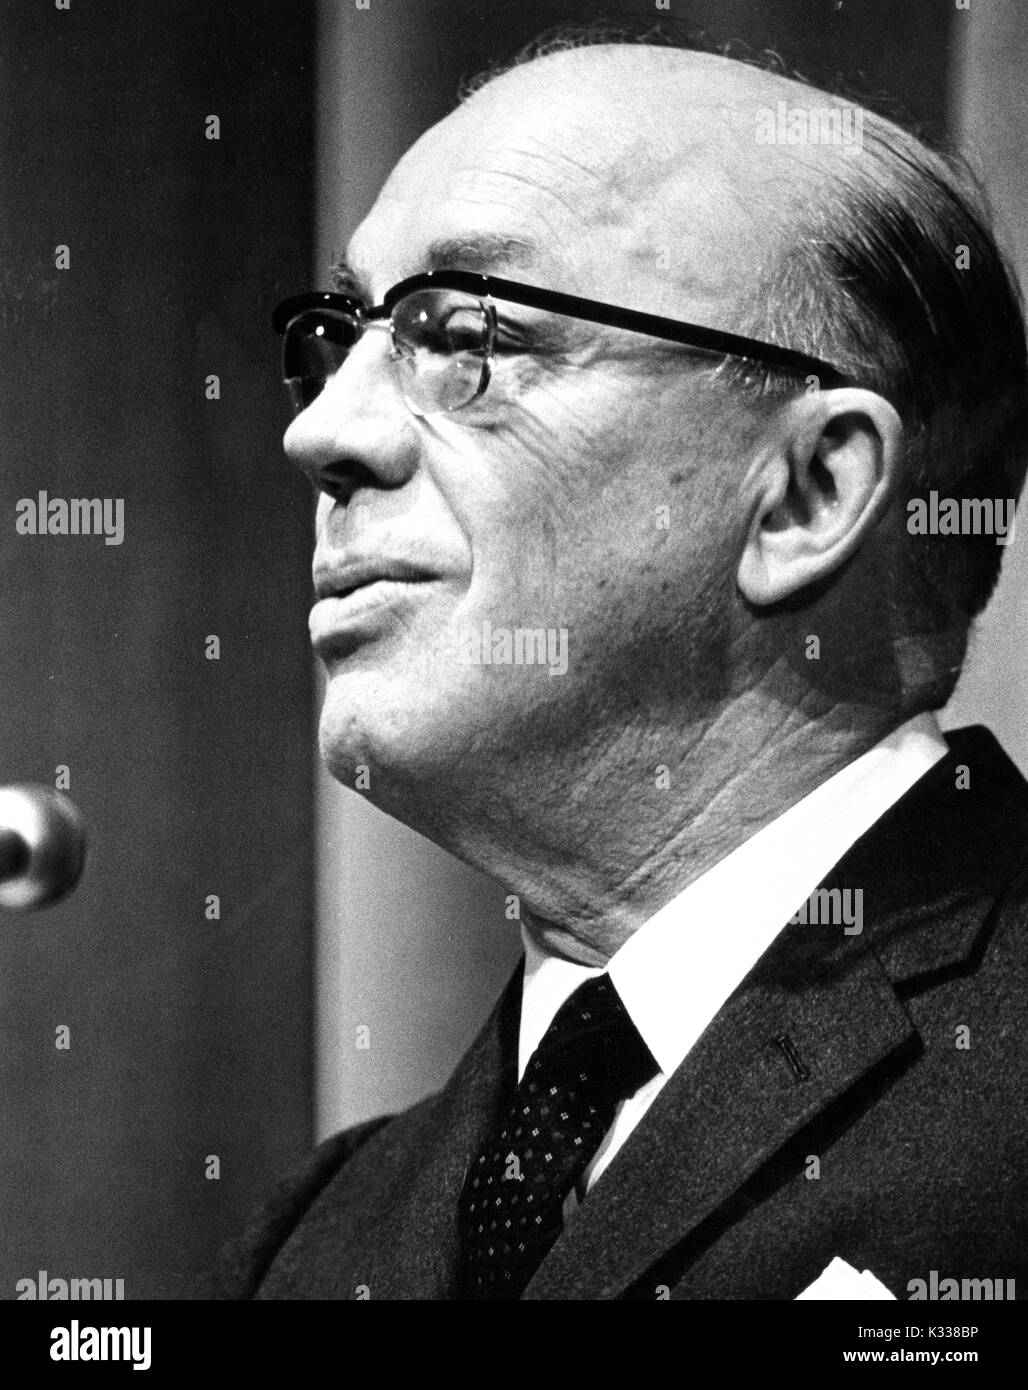 Ehrliches Porträt der amerikanischen pädagogischen Administrator und Präsident der Johns Hopkins University Milton S. Eisenhower sprechen Sie in das Mikrofon, 1970. Stockfoto